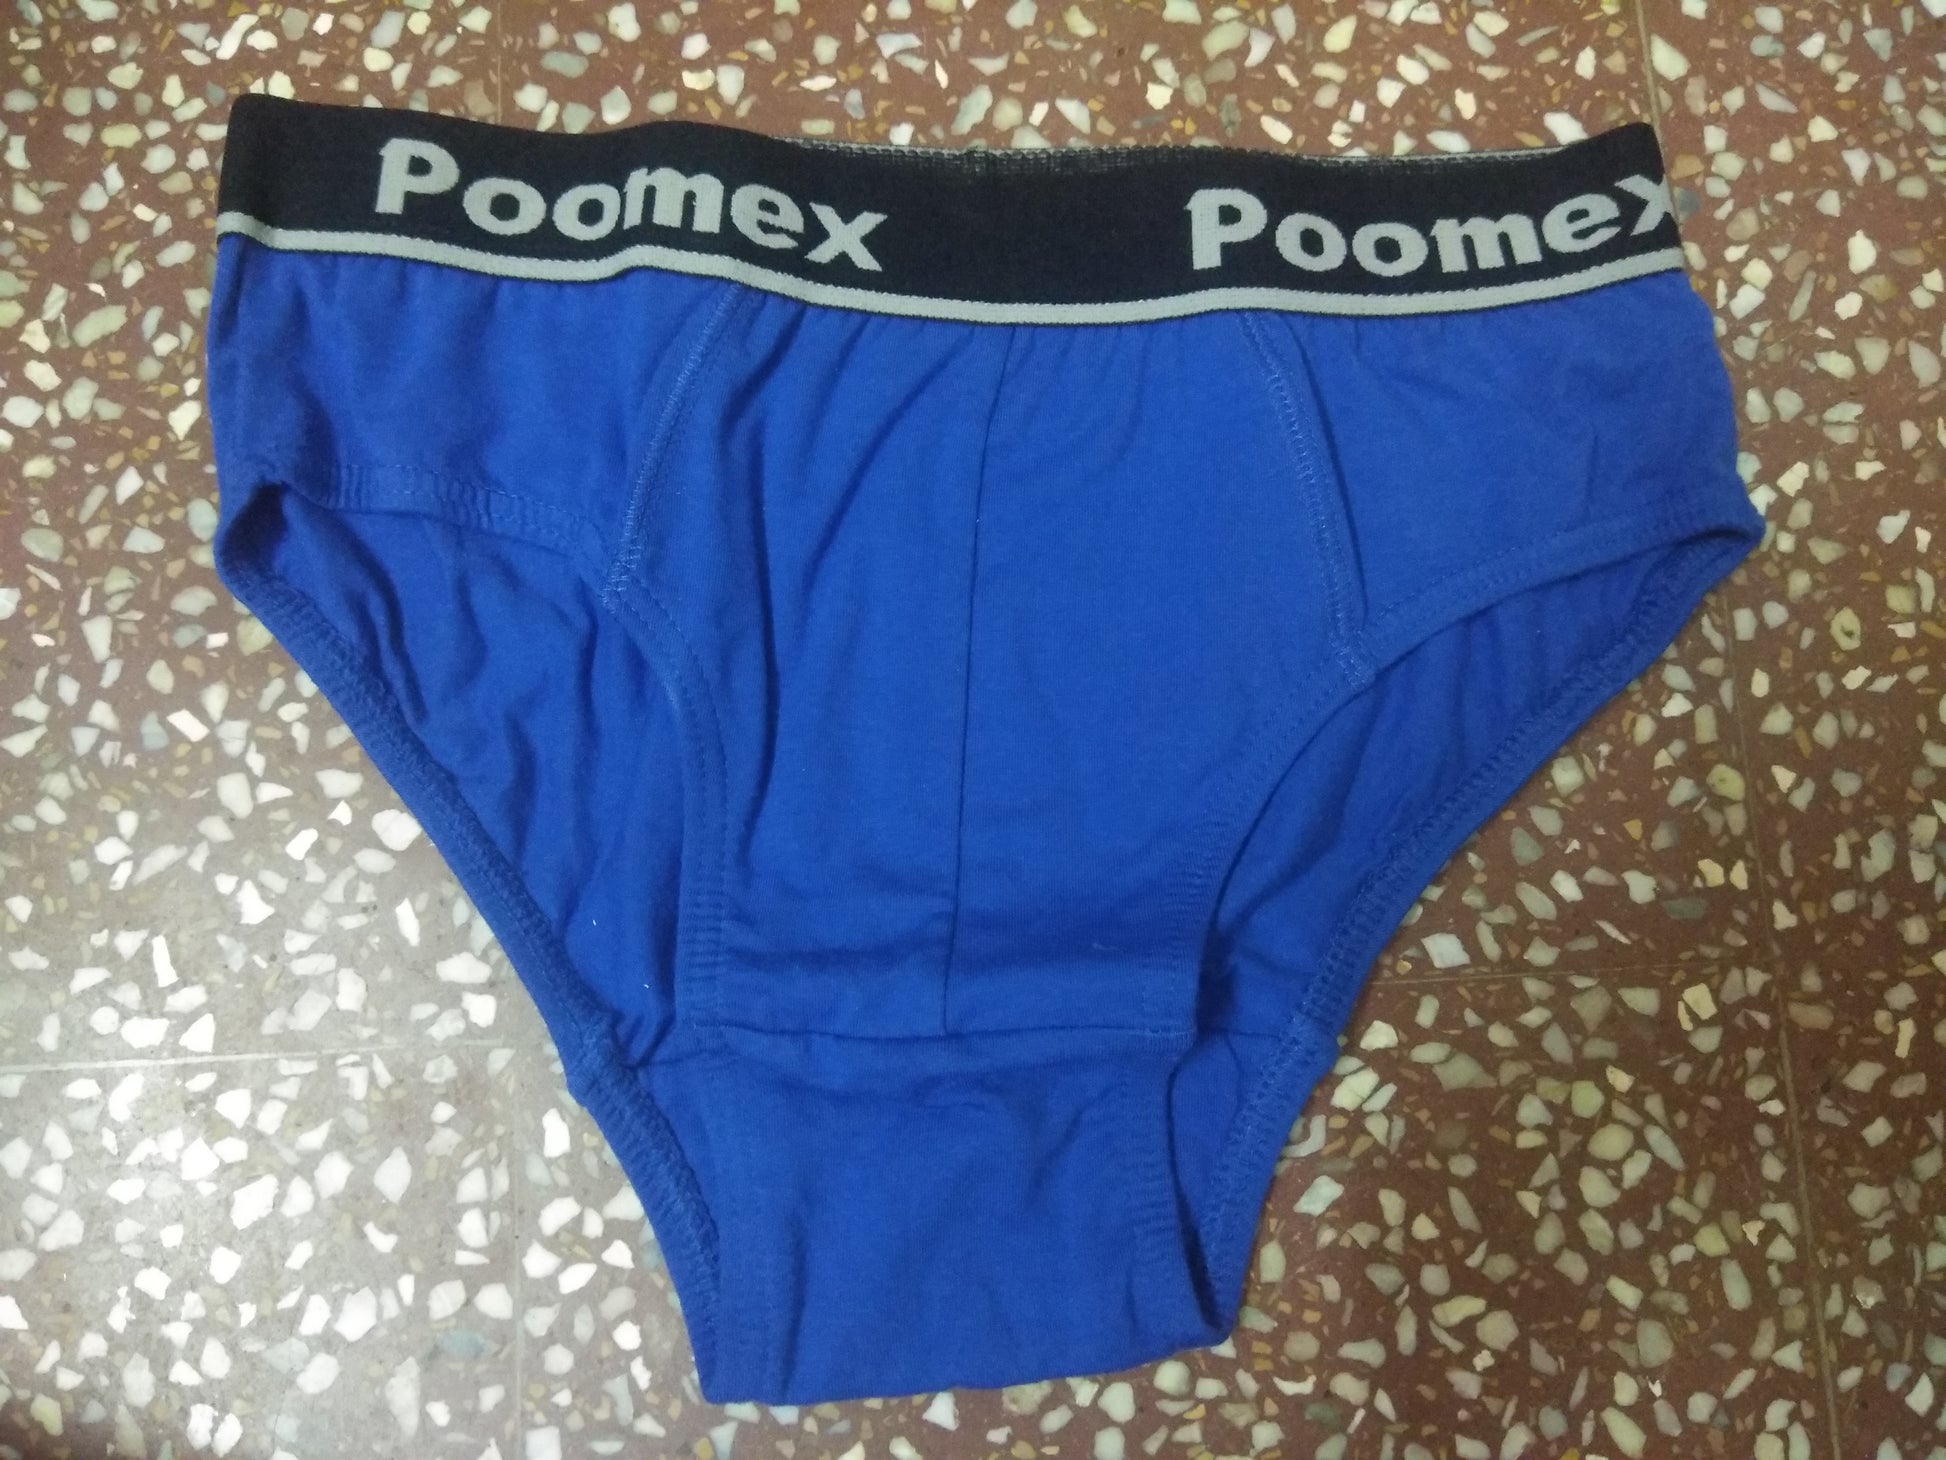 Poomer Innerwear And Swimwear - Buy Poomer Innerwear And Swimwear